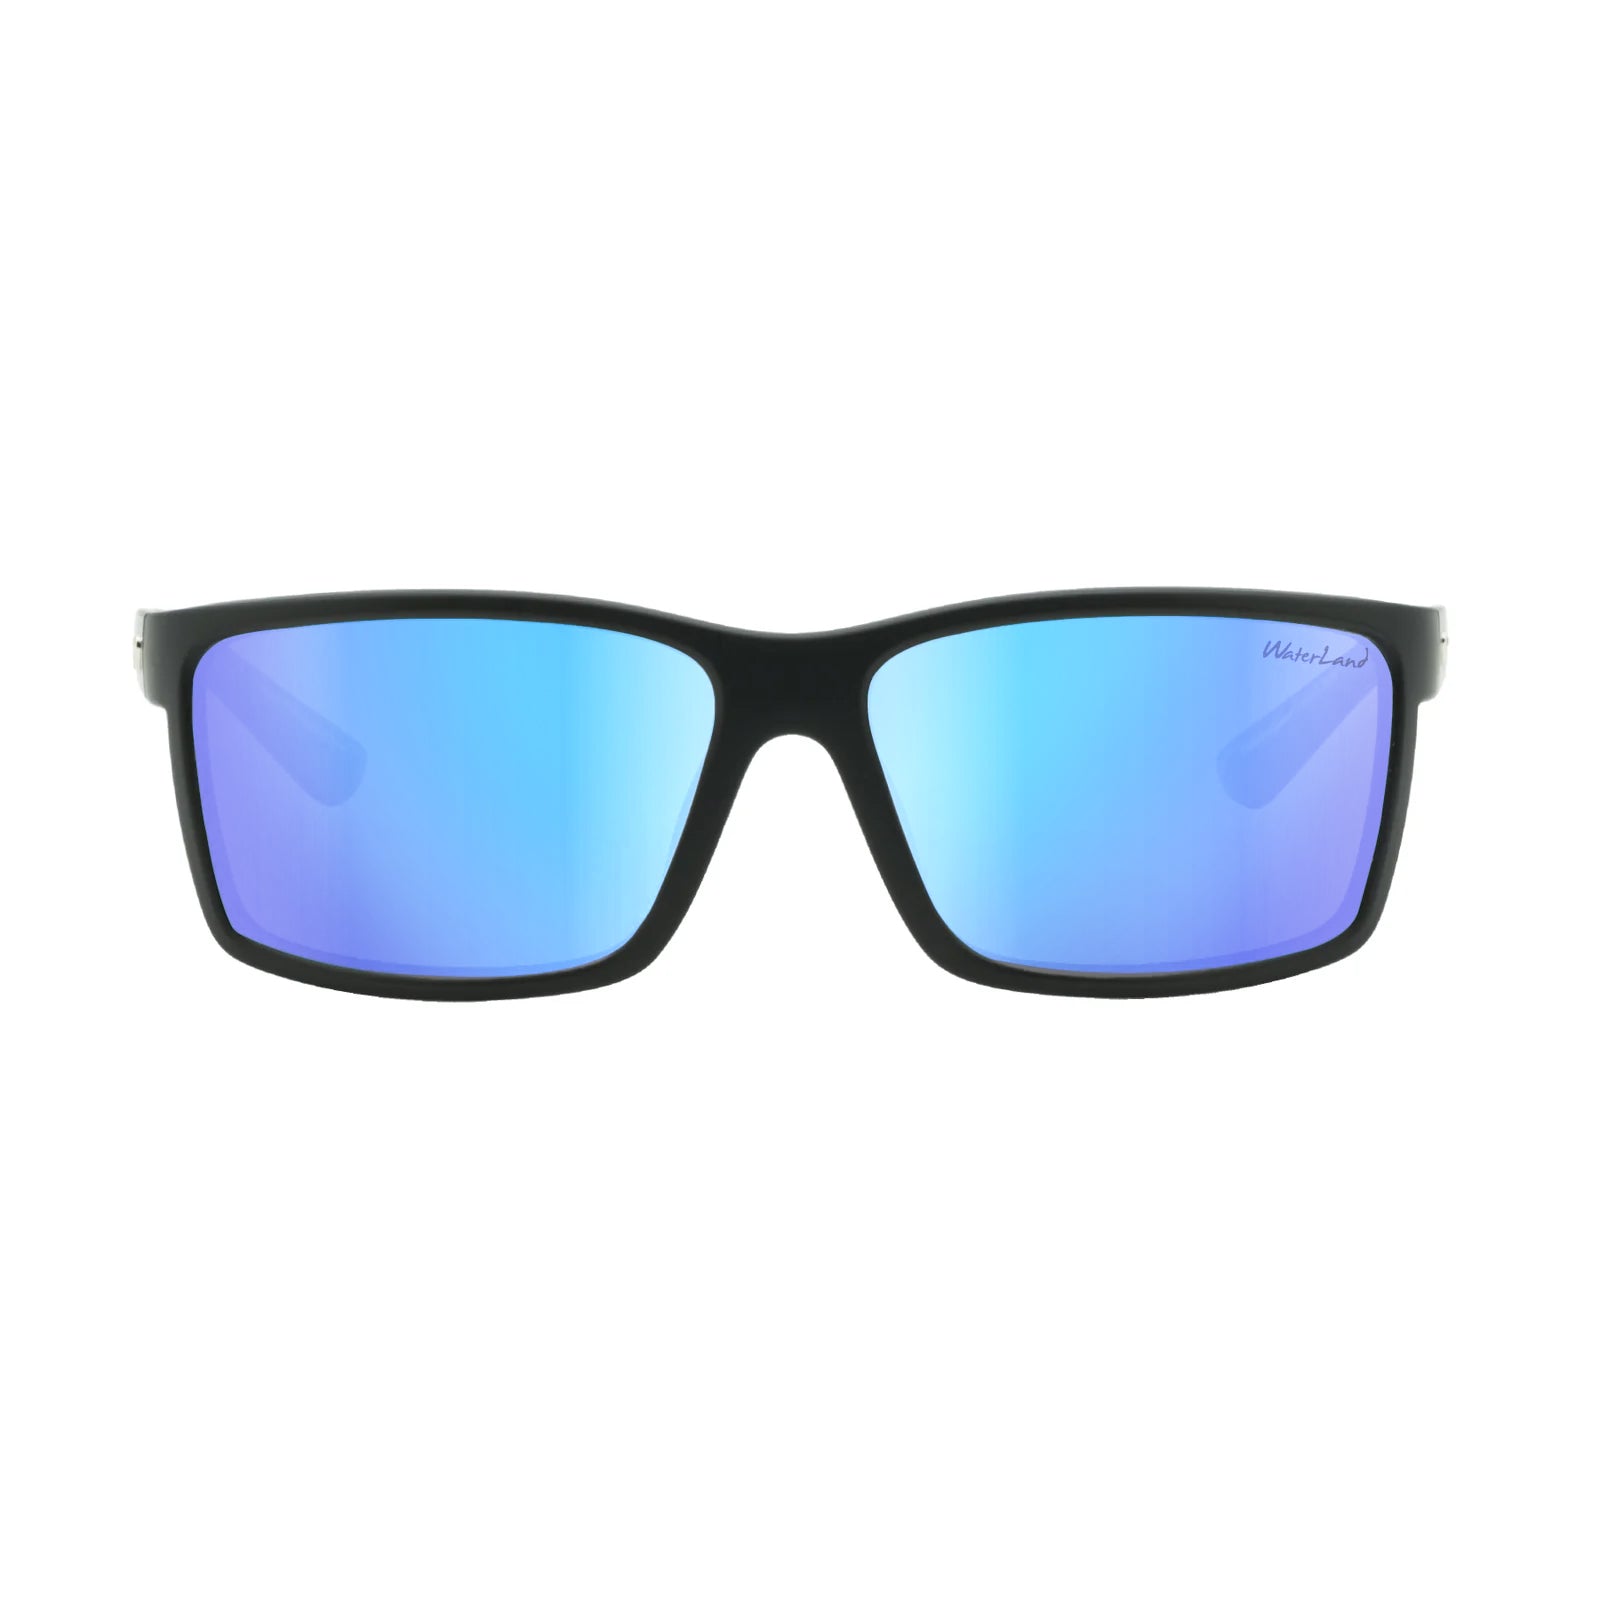 WaterLand Fishing Sunglasses - BedFishers Series